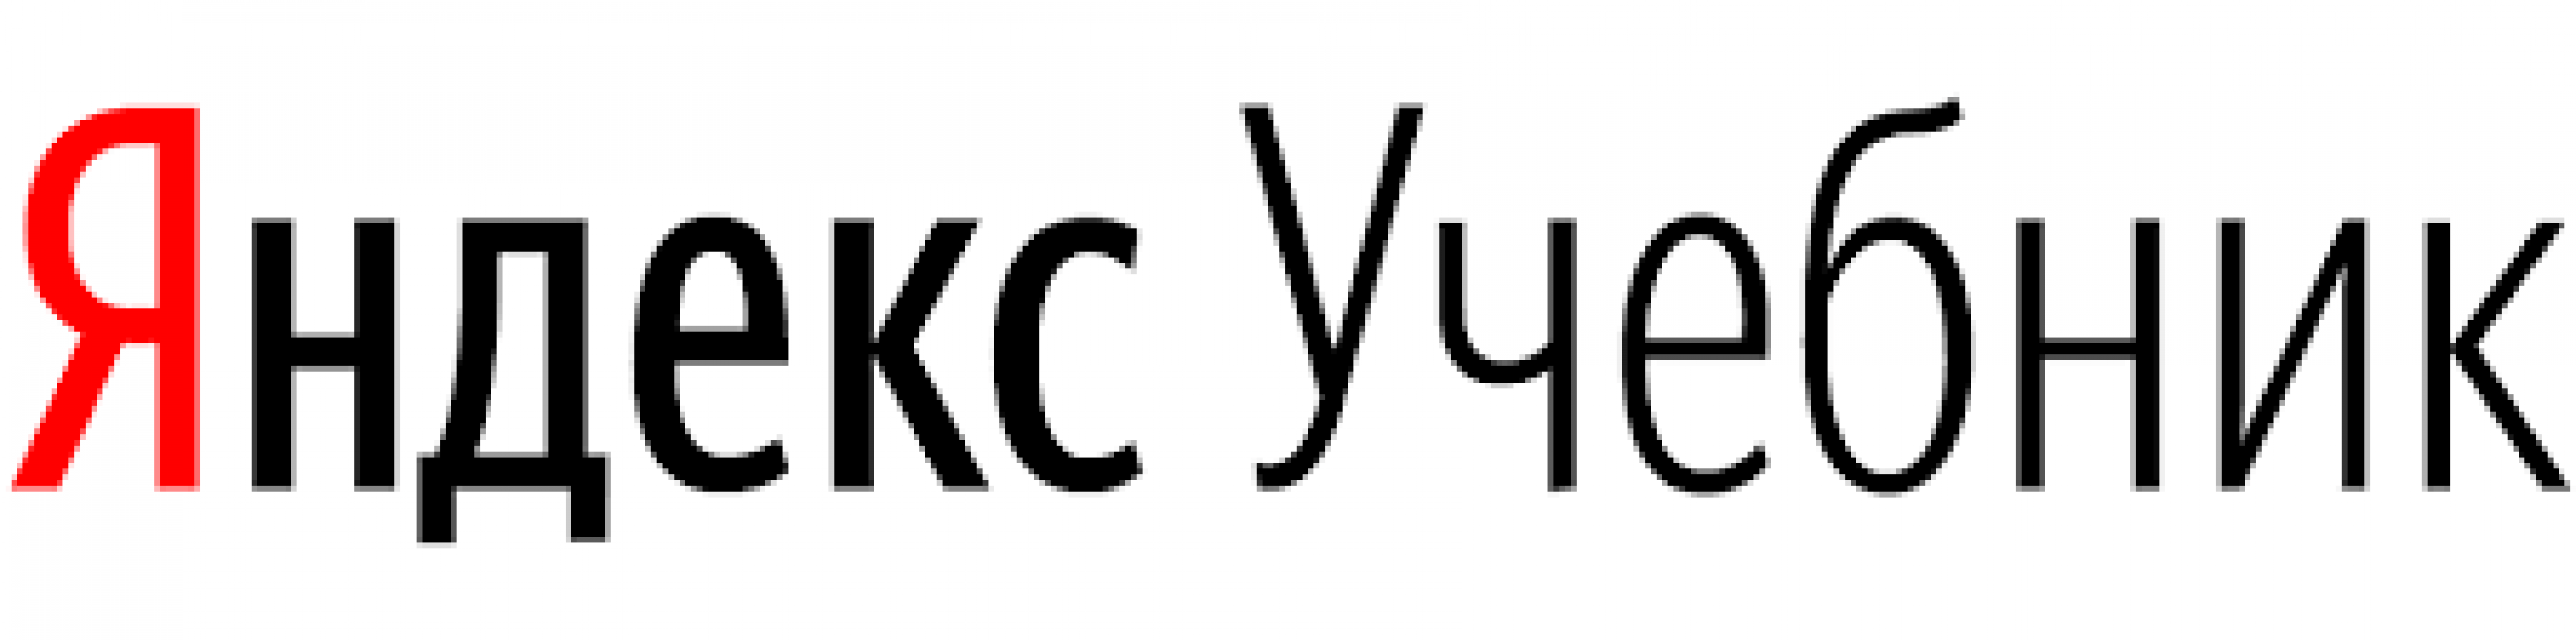 Яндекс учебник логотип